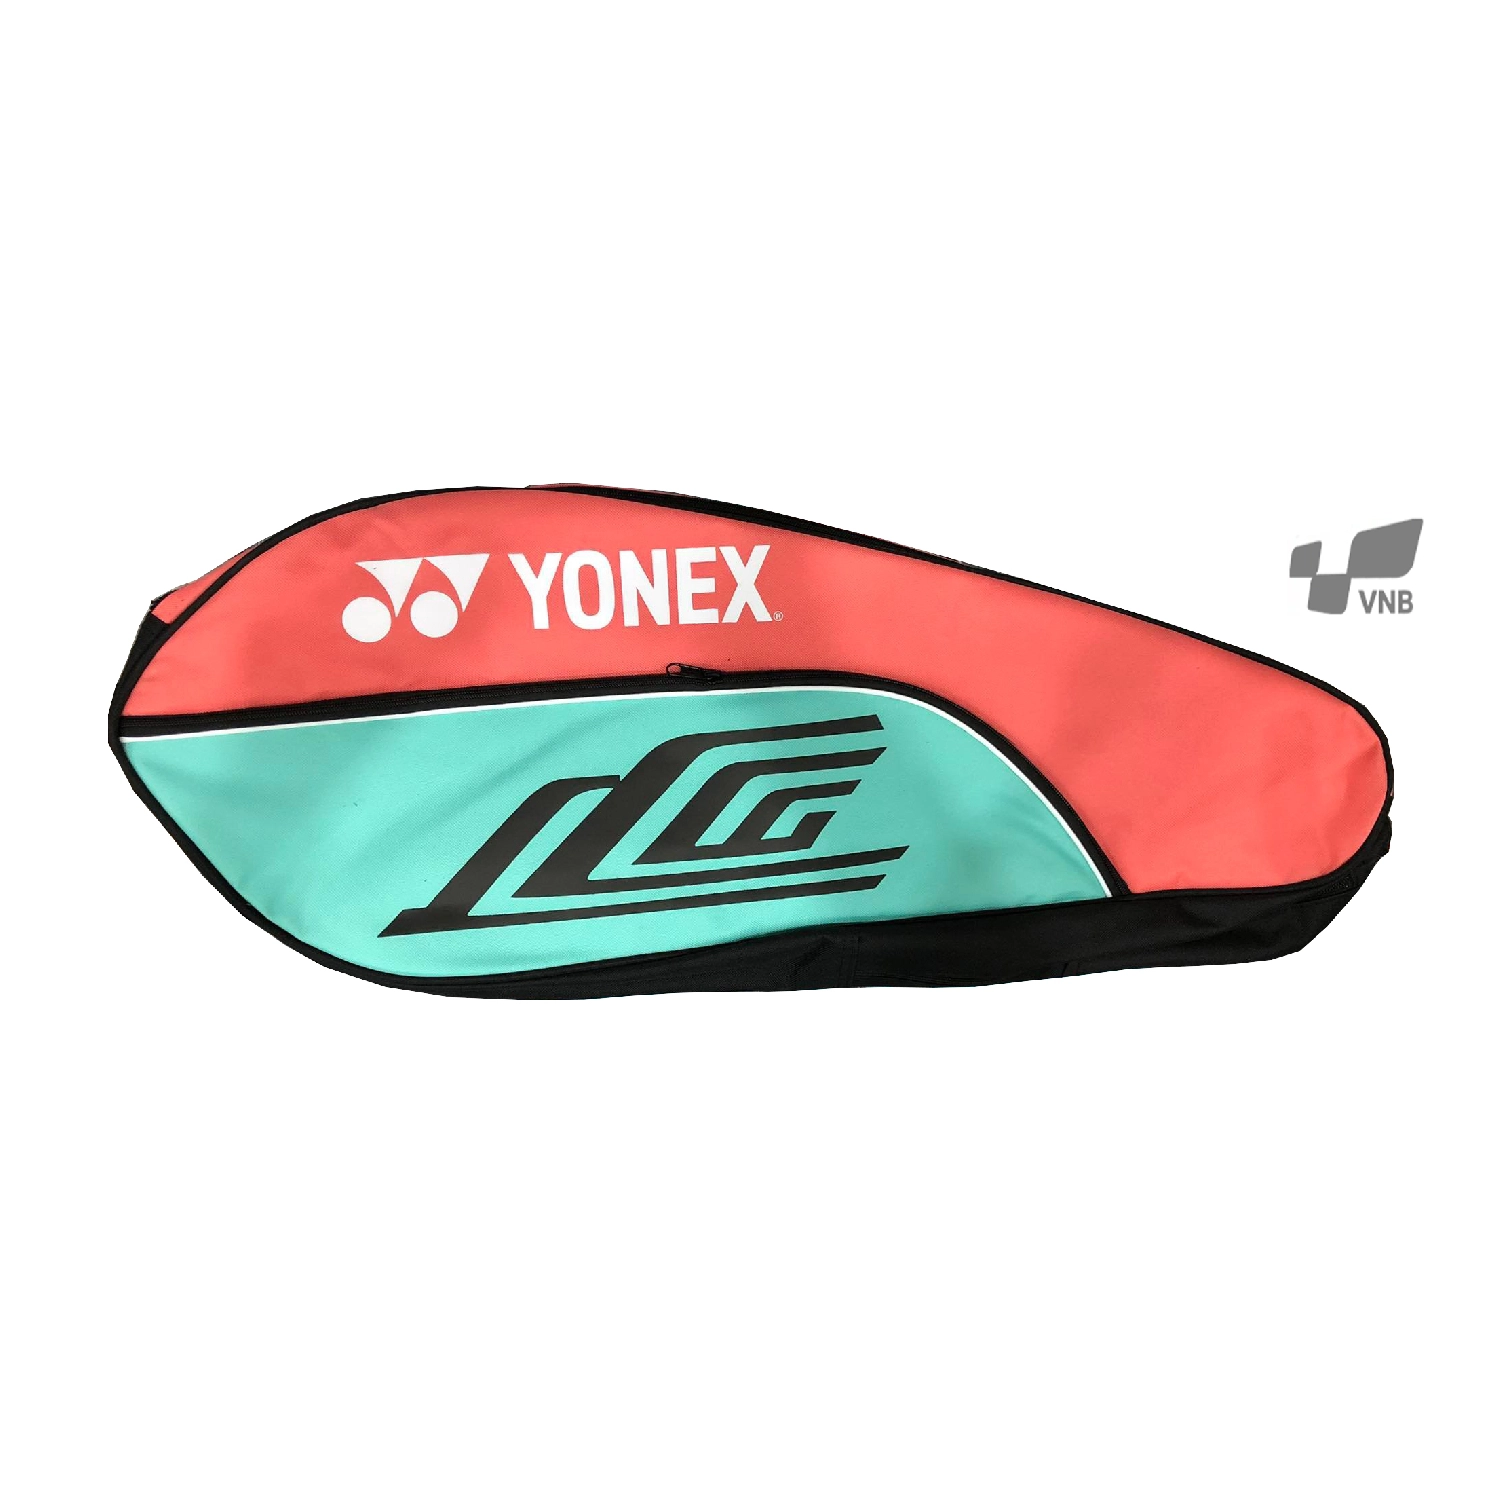 Túi cầu lông Yonex BAG1412W - Hồng xanh ngọc 2021